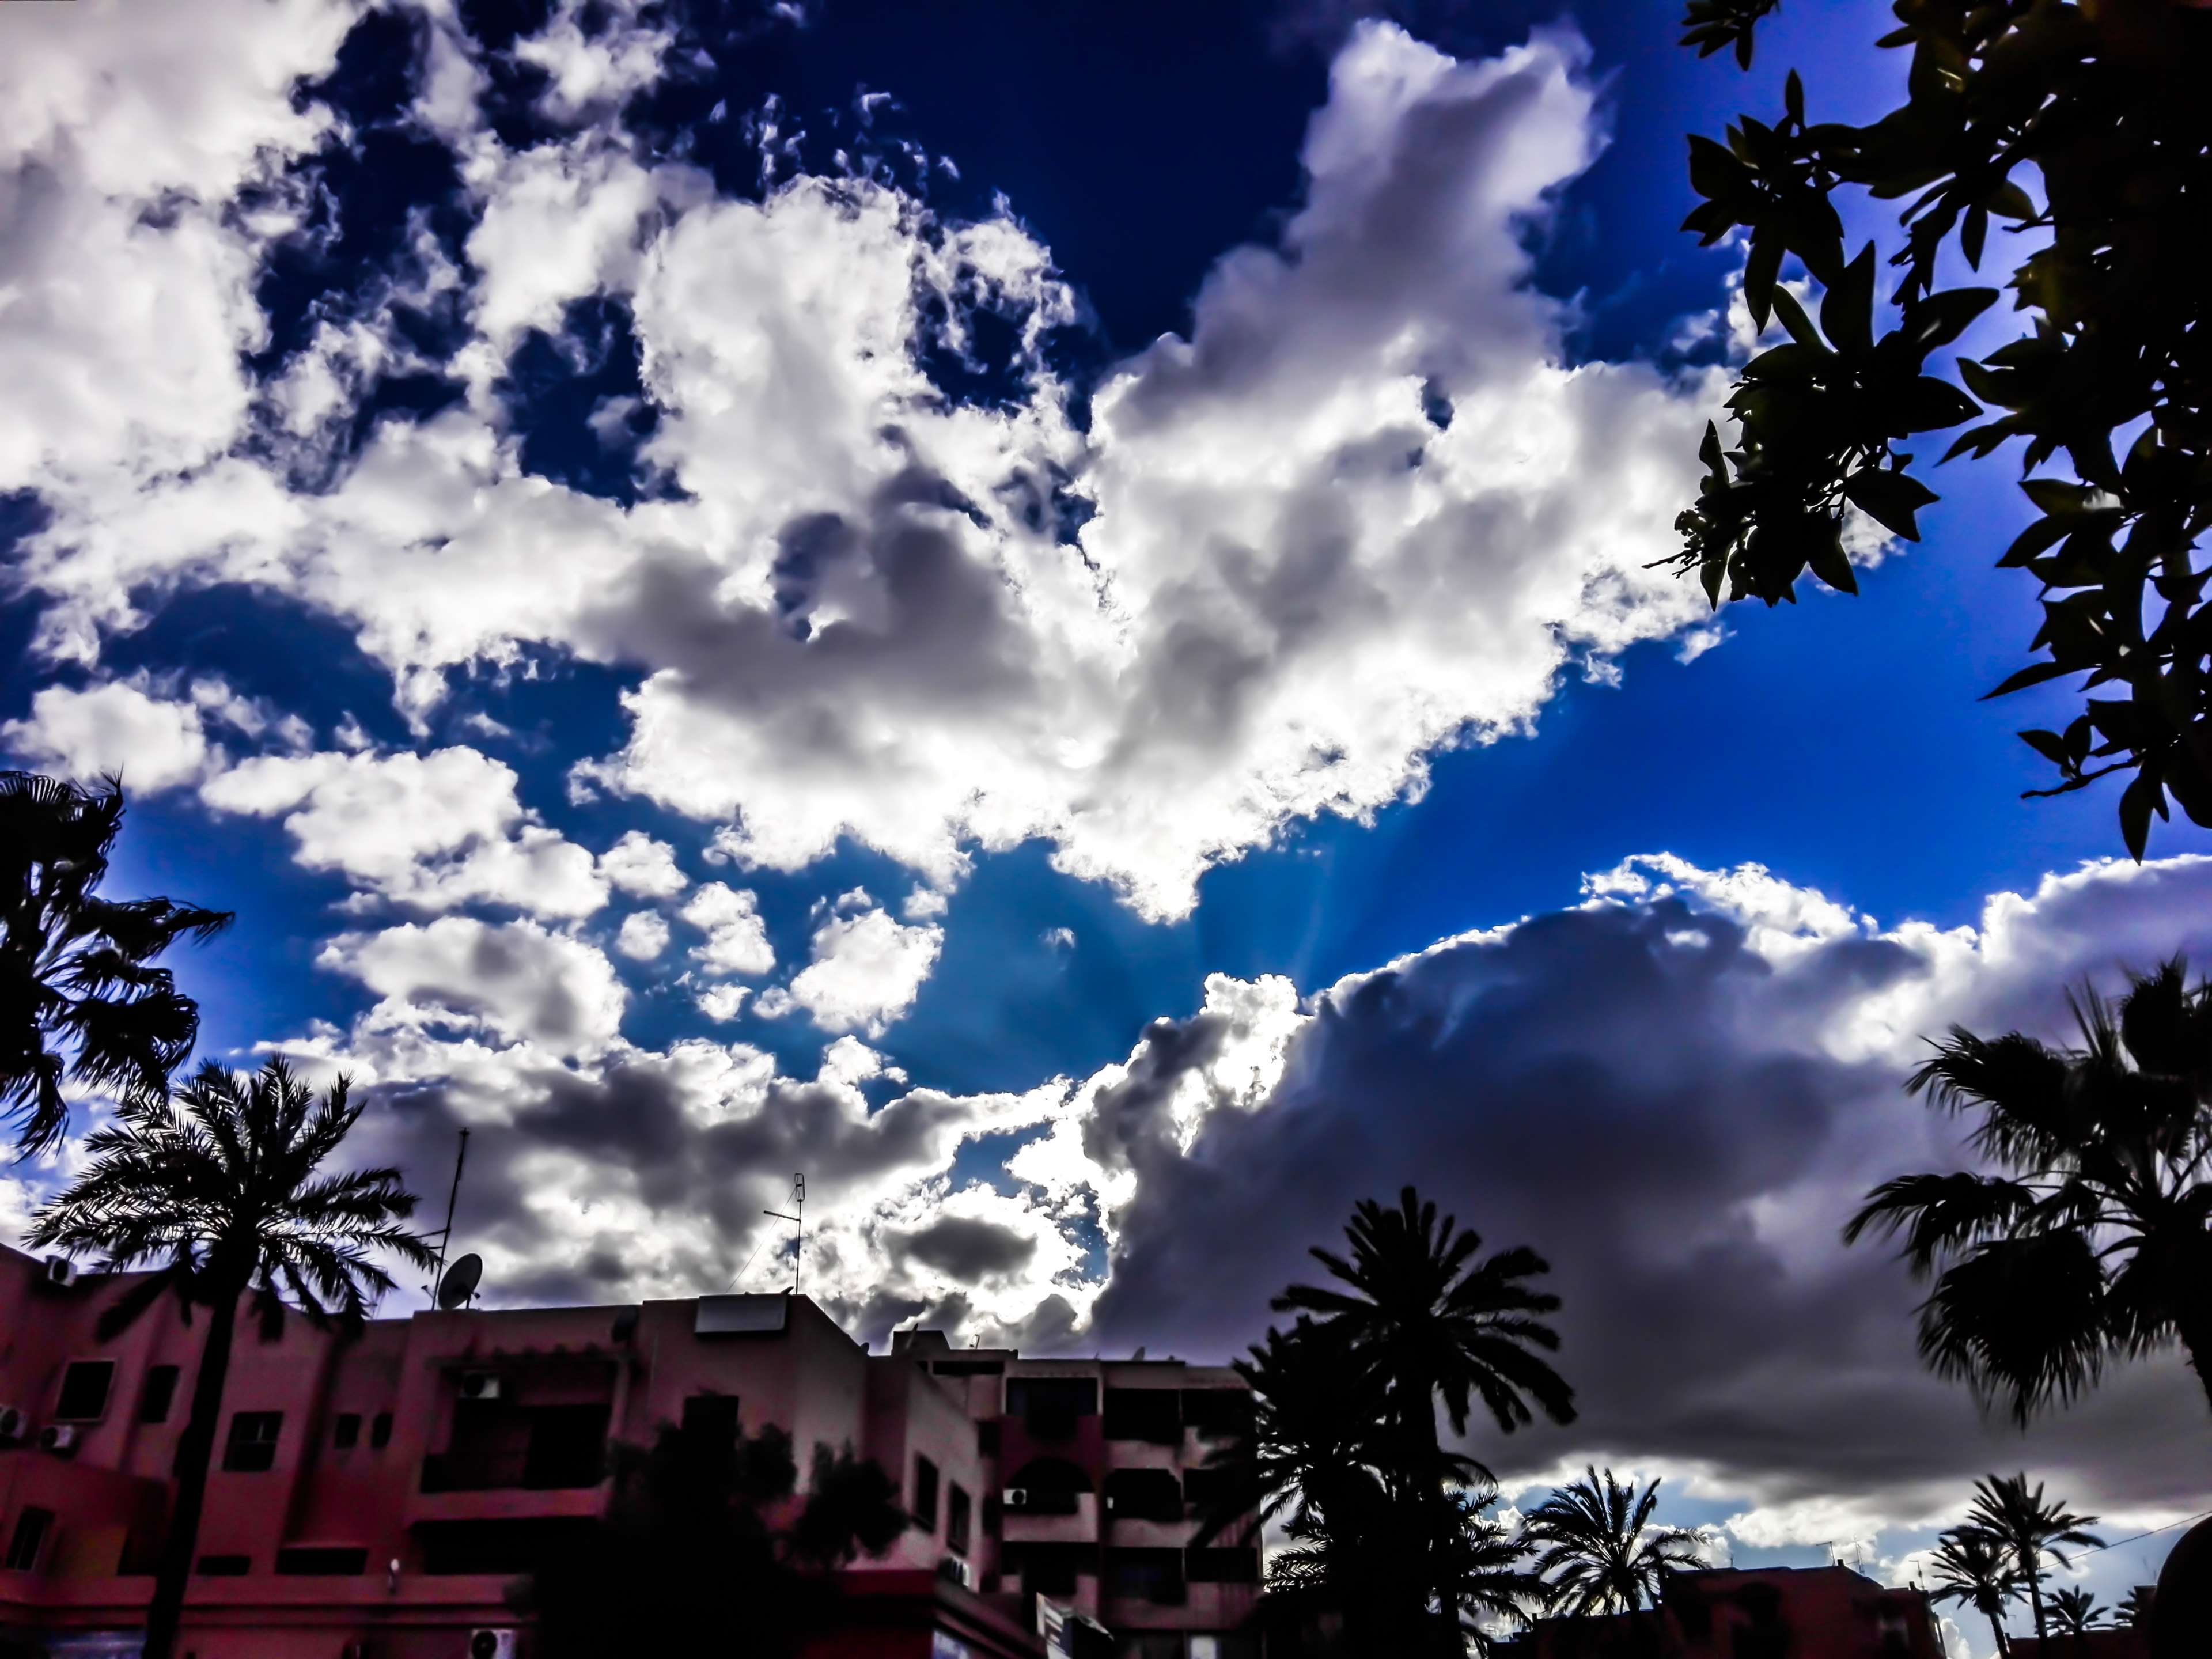 دانلود عکس پروفایل از آسمای زیبای آبی در مراکش 1402